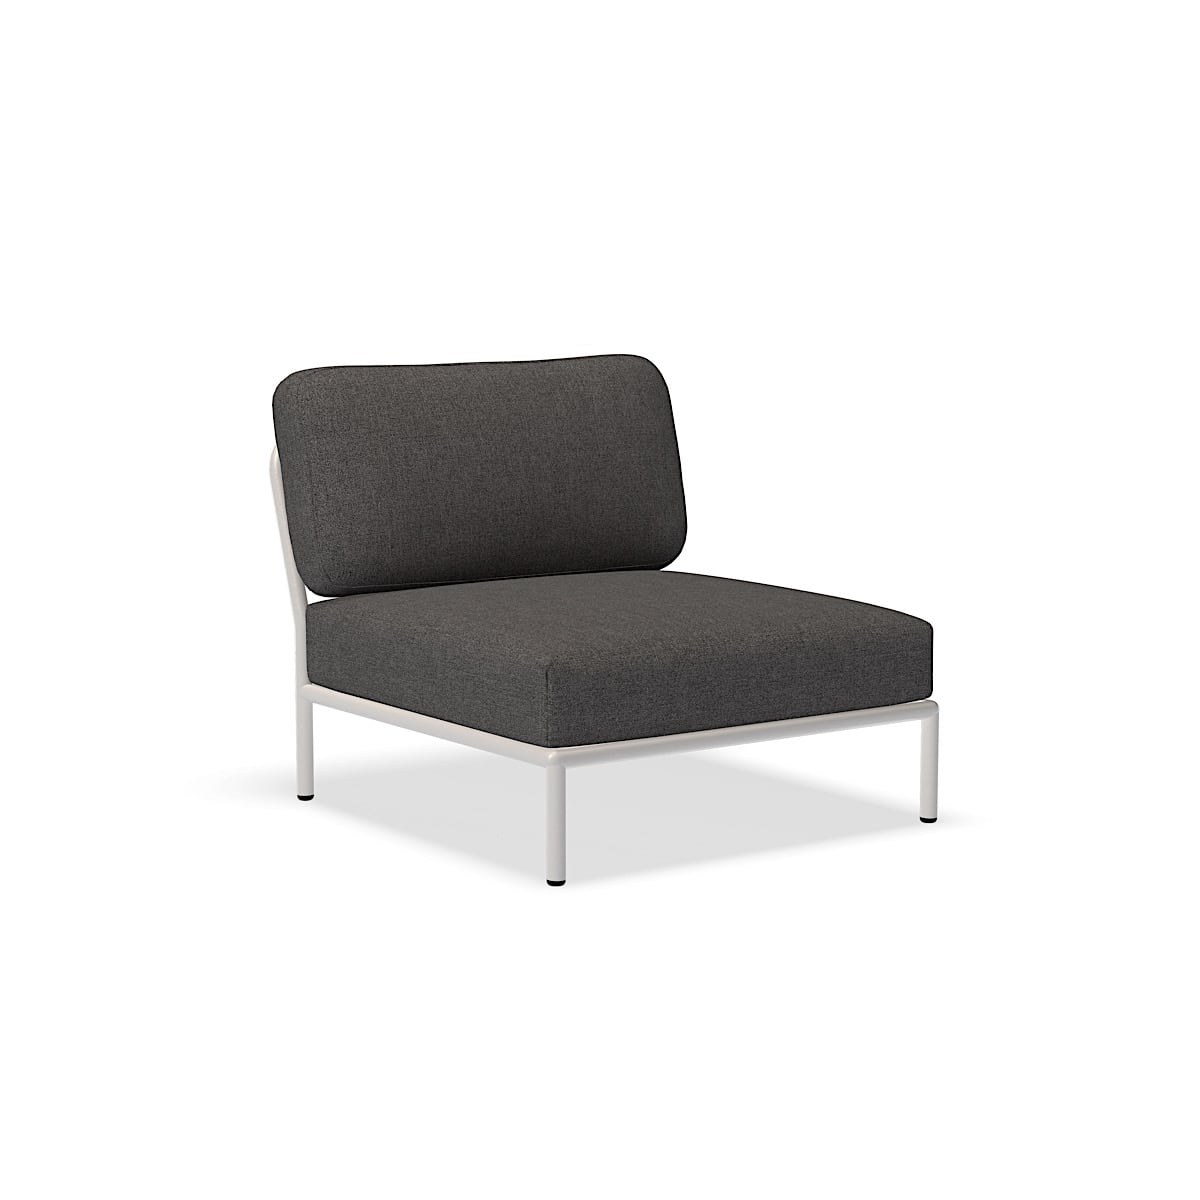 الكرسي - 12205-9843 - كرسي ، رمادي غامق (BASIC) ، هيكل أبيض